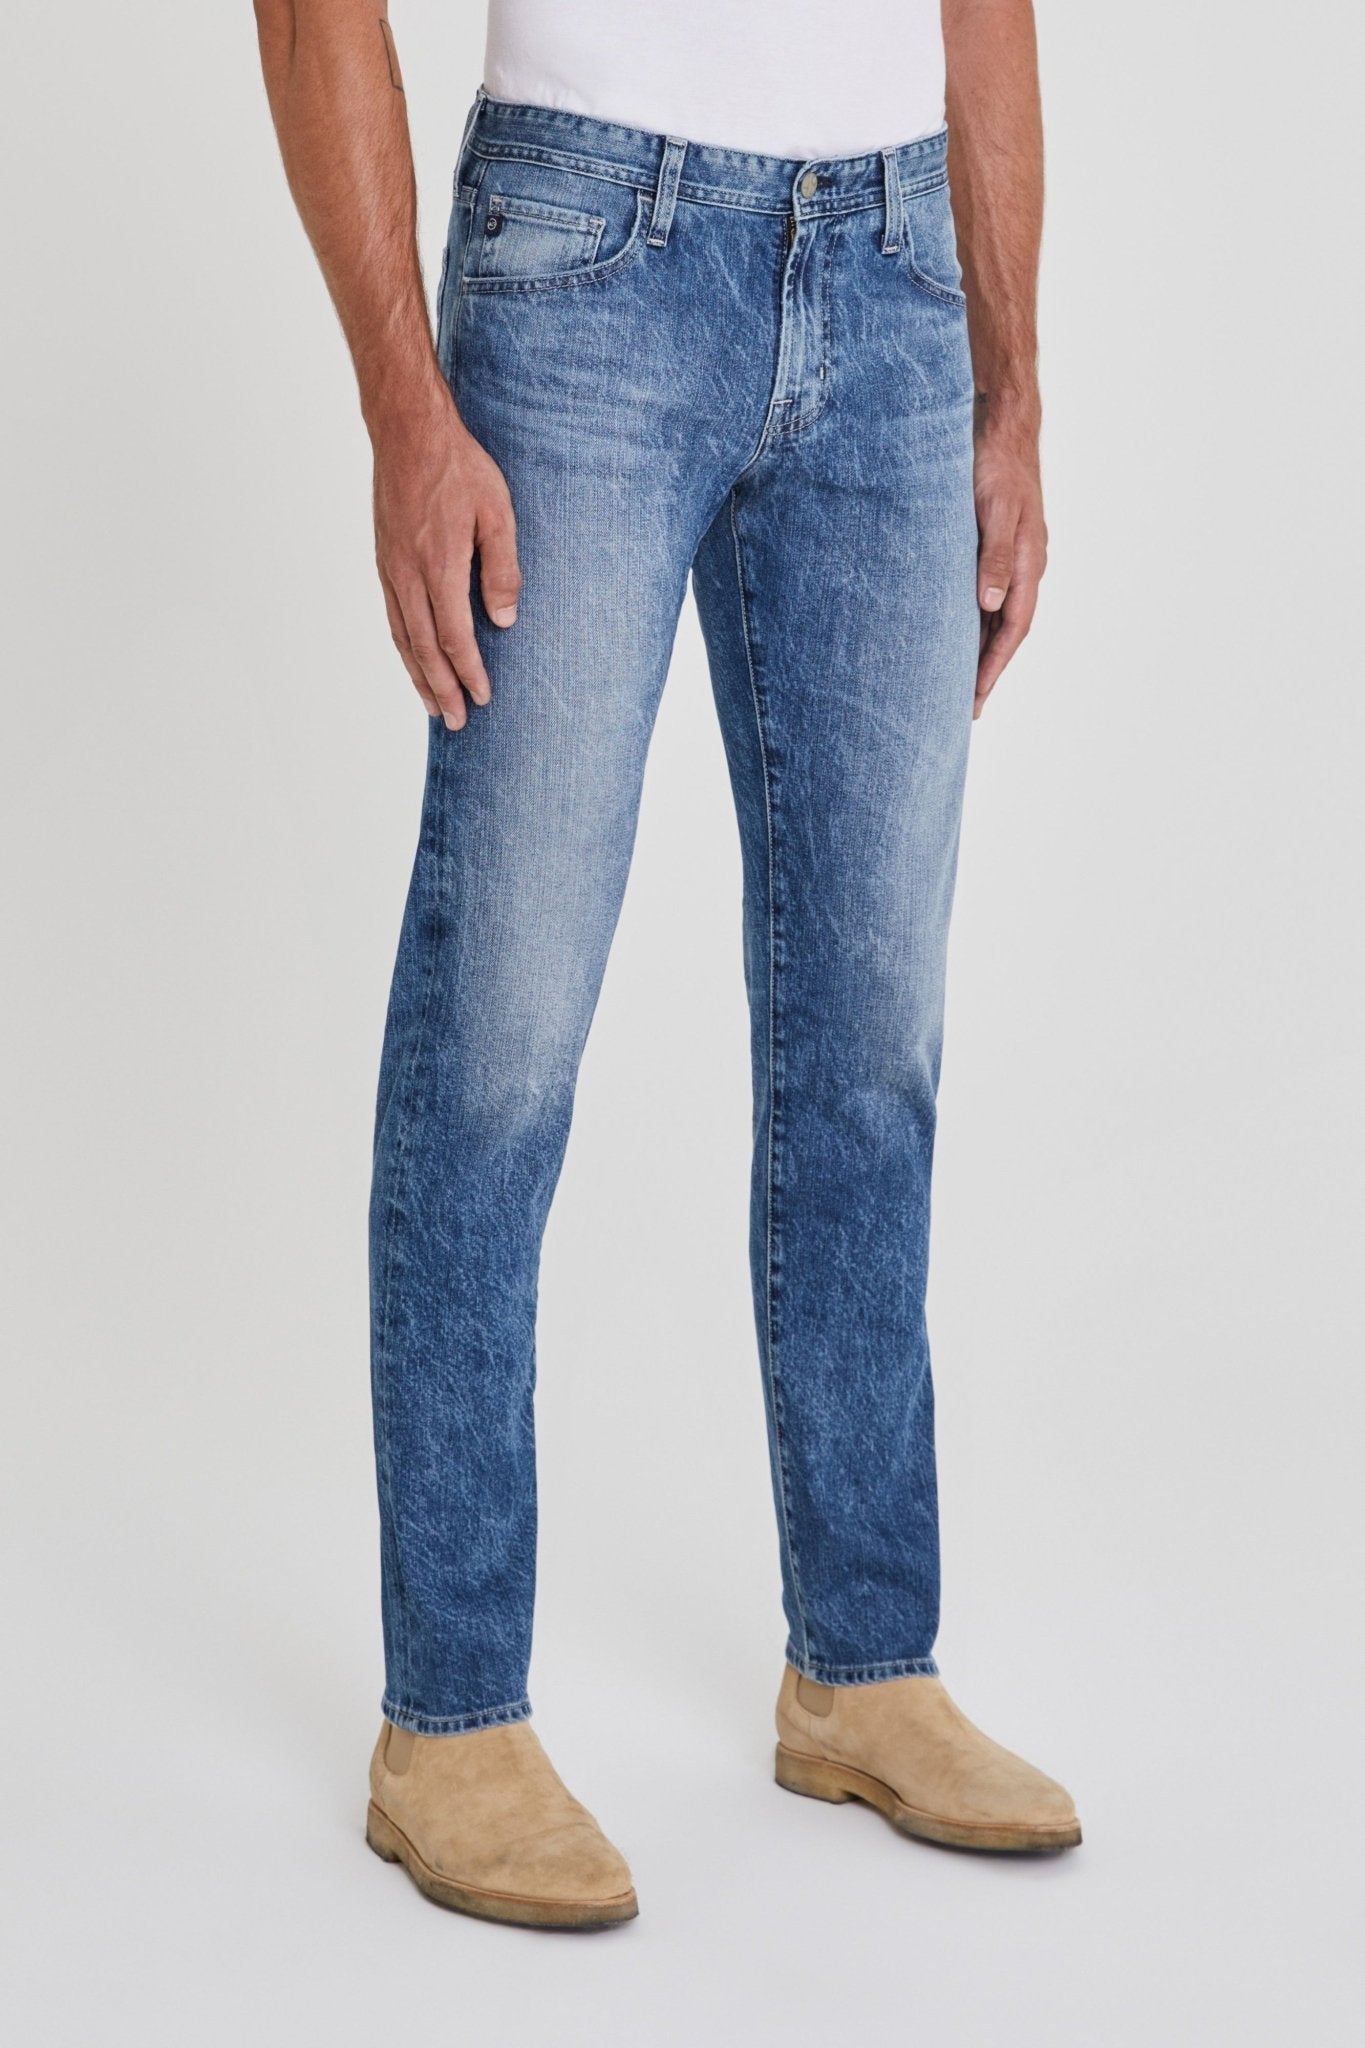 Dylan Slim Skinny Jean - AG Jeans - Danali - 1139LED-15YVND-33